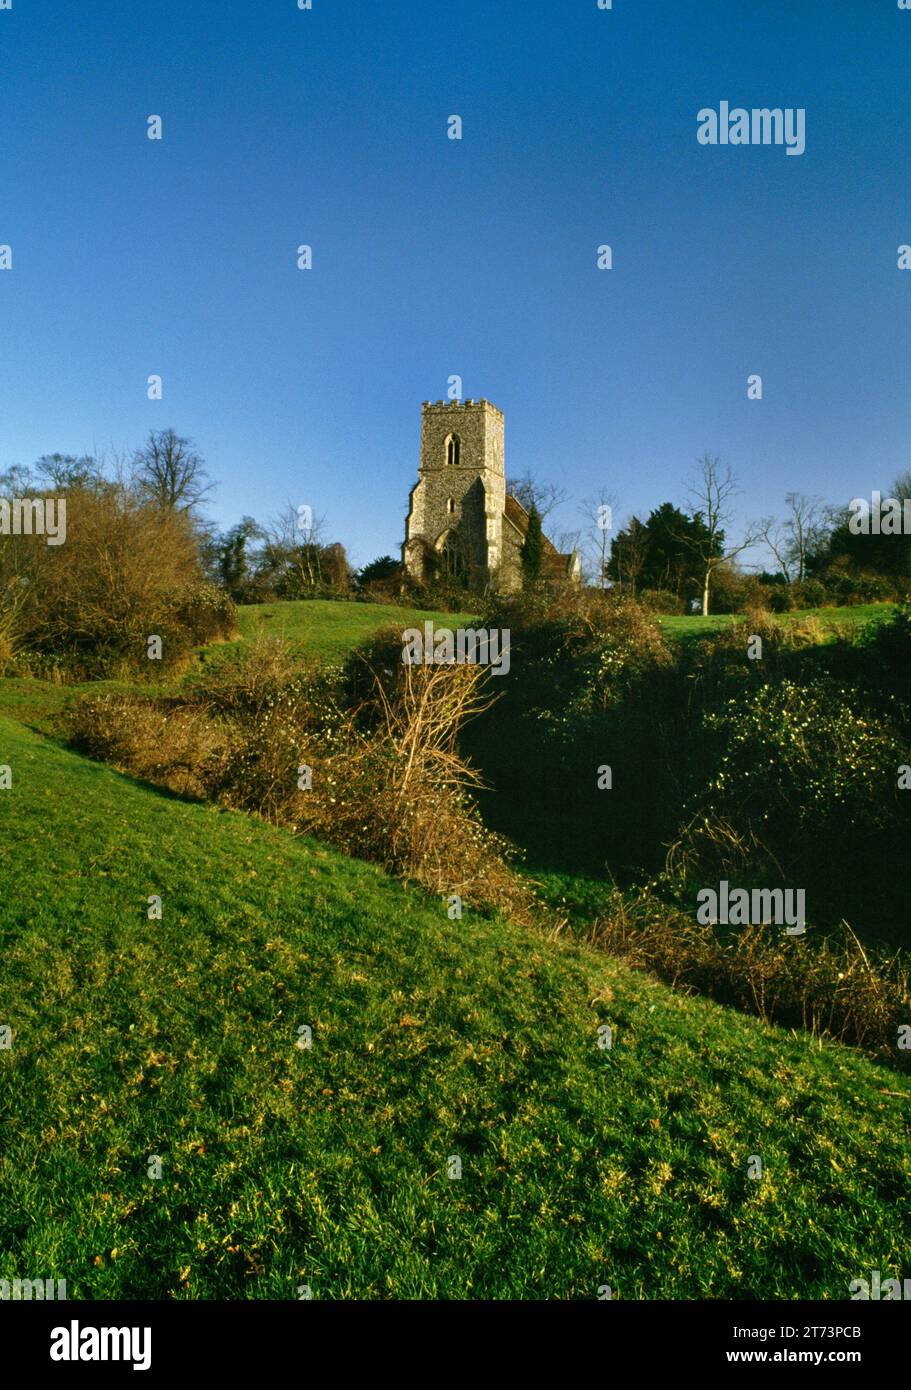 Sehen Sie nordöstlich von All Saints, hauptsächlich die Kirche aus dem 15. Jahrhundert, die sich in den Erdwerken von Castle Camps Norman Motte & Bailey Castle befindet, Cambridgeshire, England, Großbritannien. Stockfoto